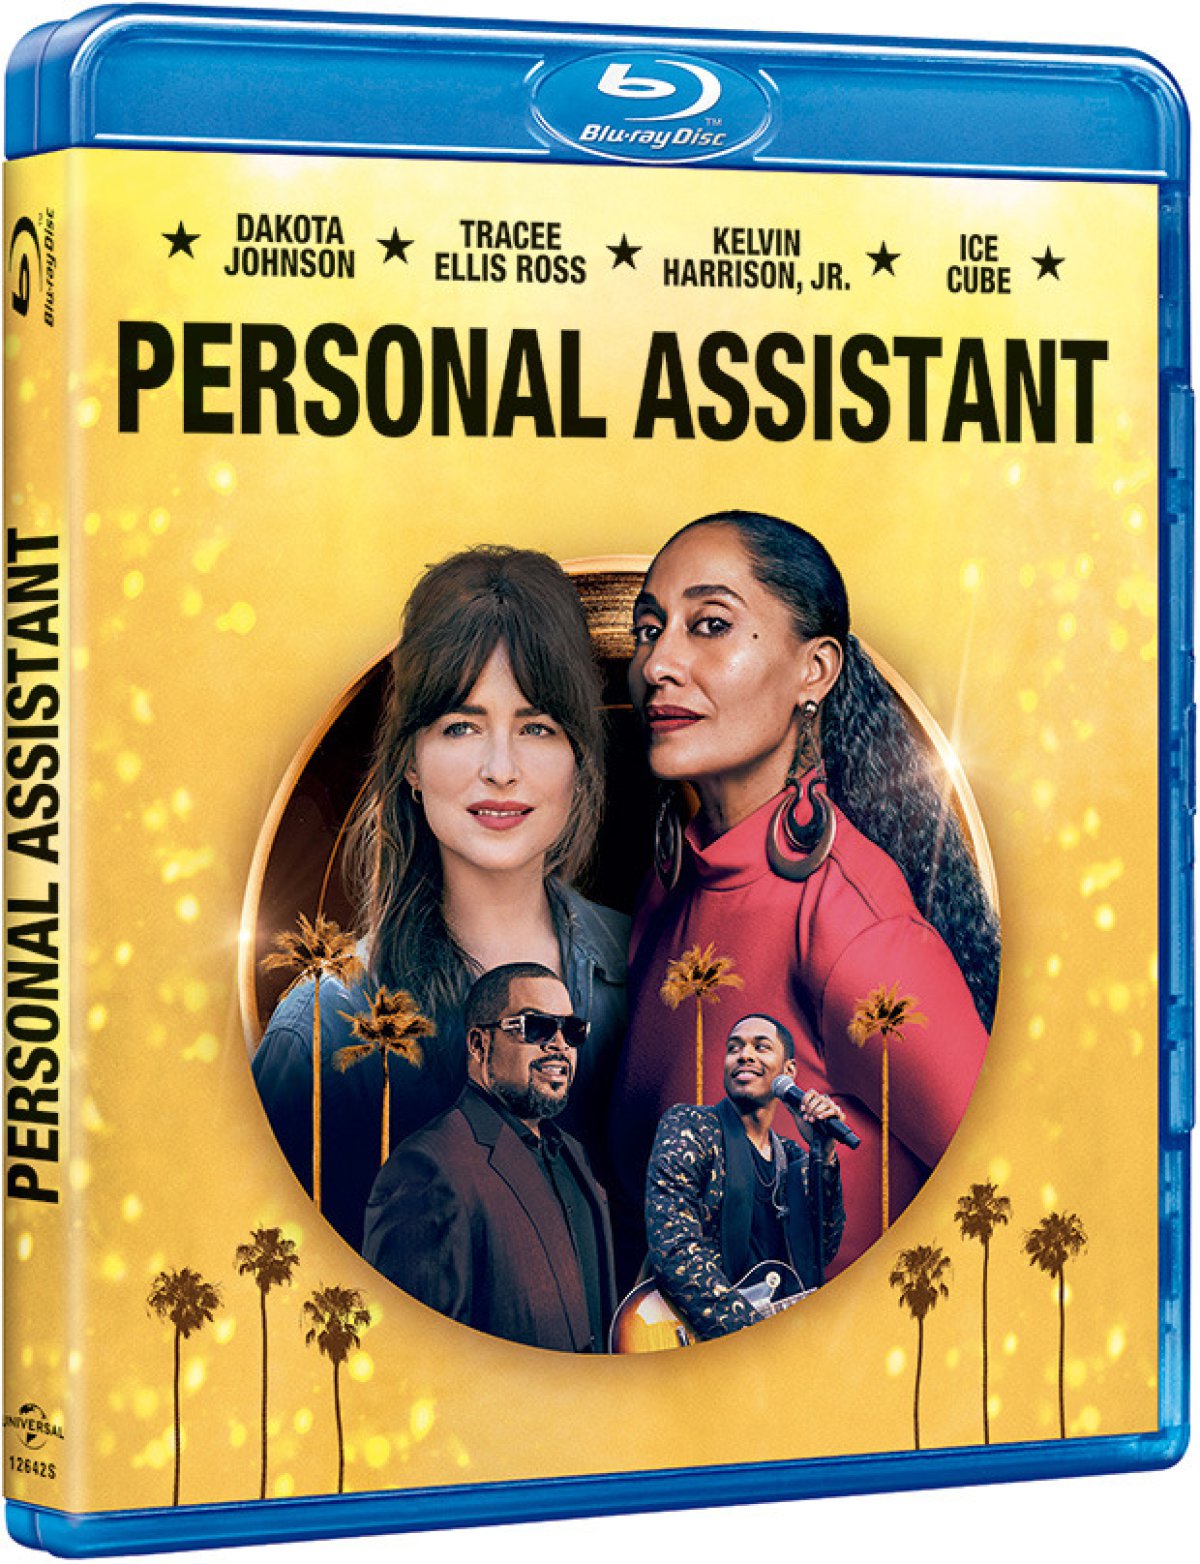 Dakota Johnson, Tracee Ellis Ross, Ice CUbe y Kelvin Harrison, Jr. en la portada del Blu-Ray de &#039;Personal Assistant&#039;